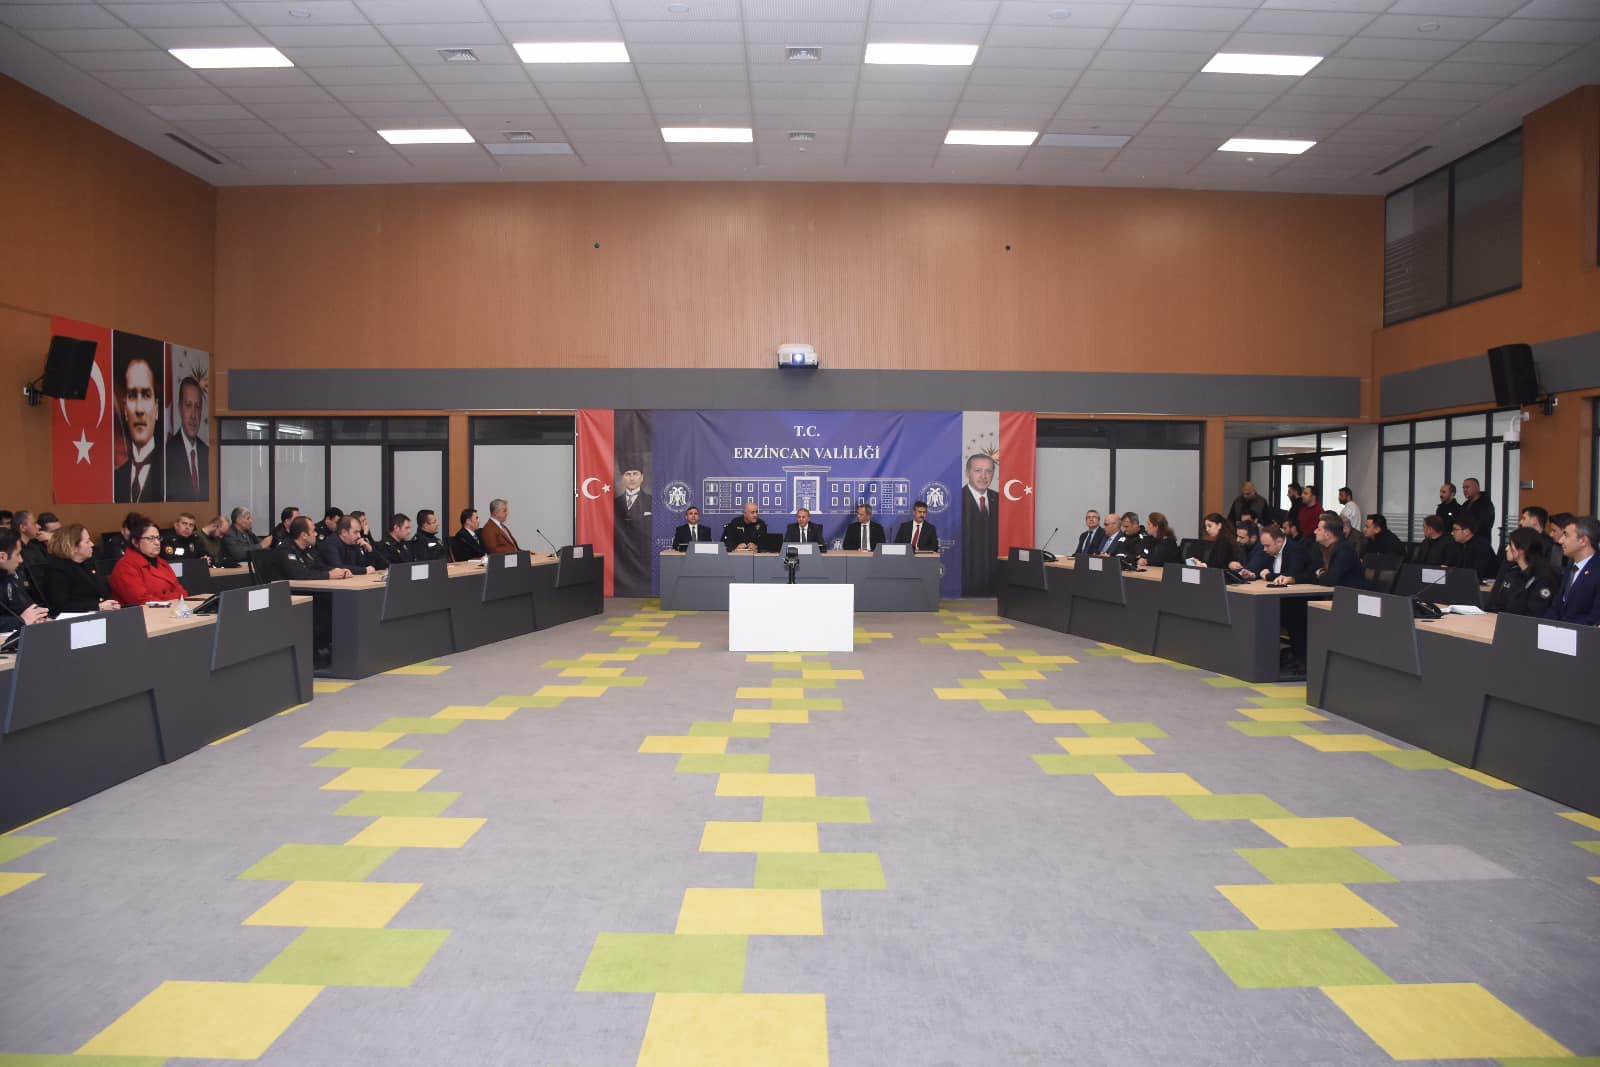 Erzincan’da “Seçim Güvenliği Toplantısı” gerçekleştirildi